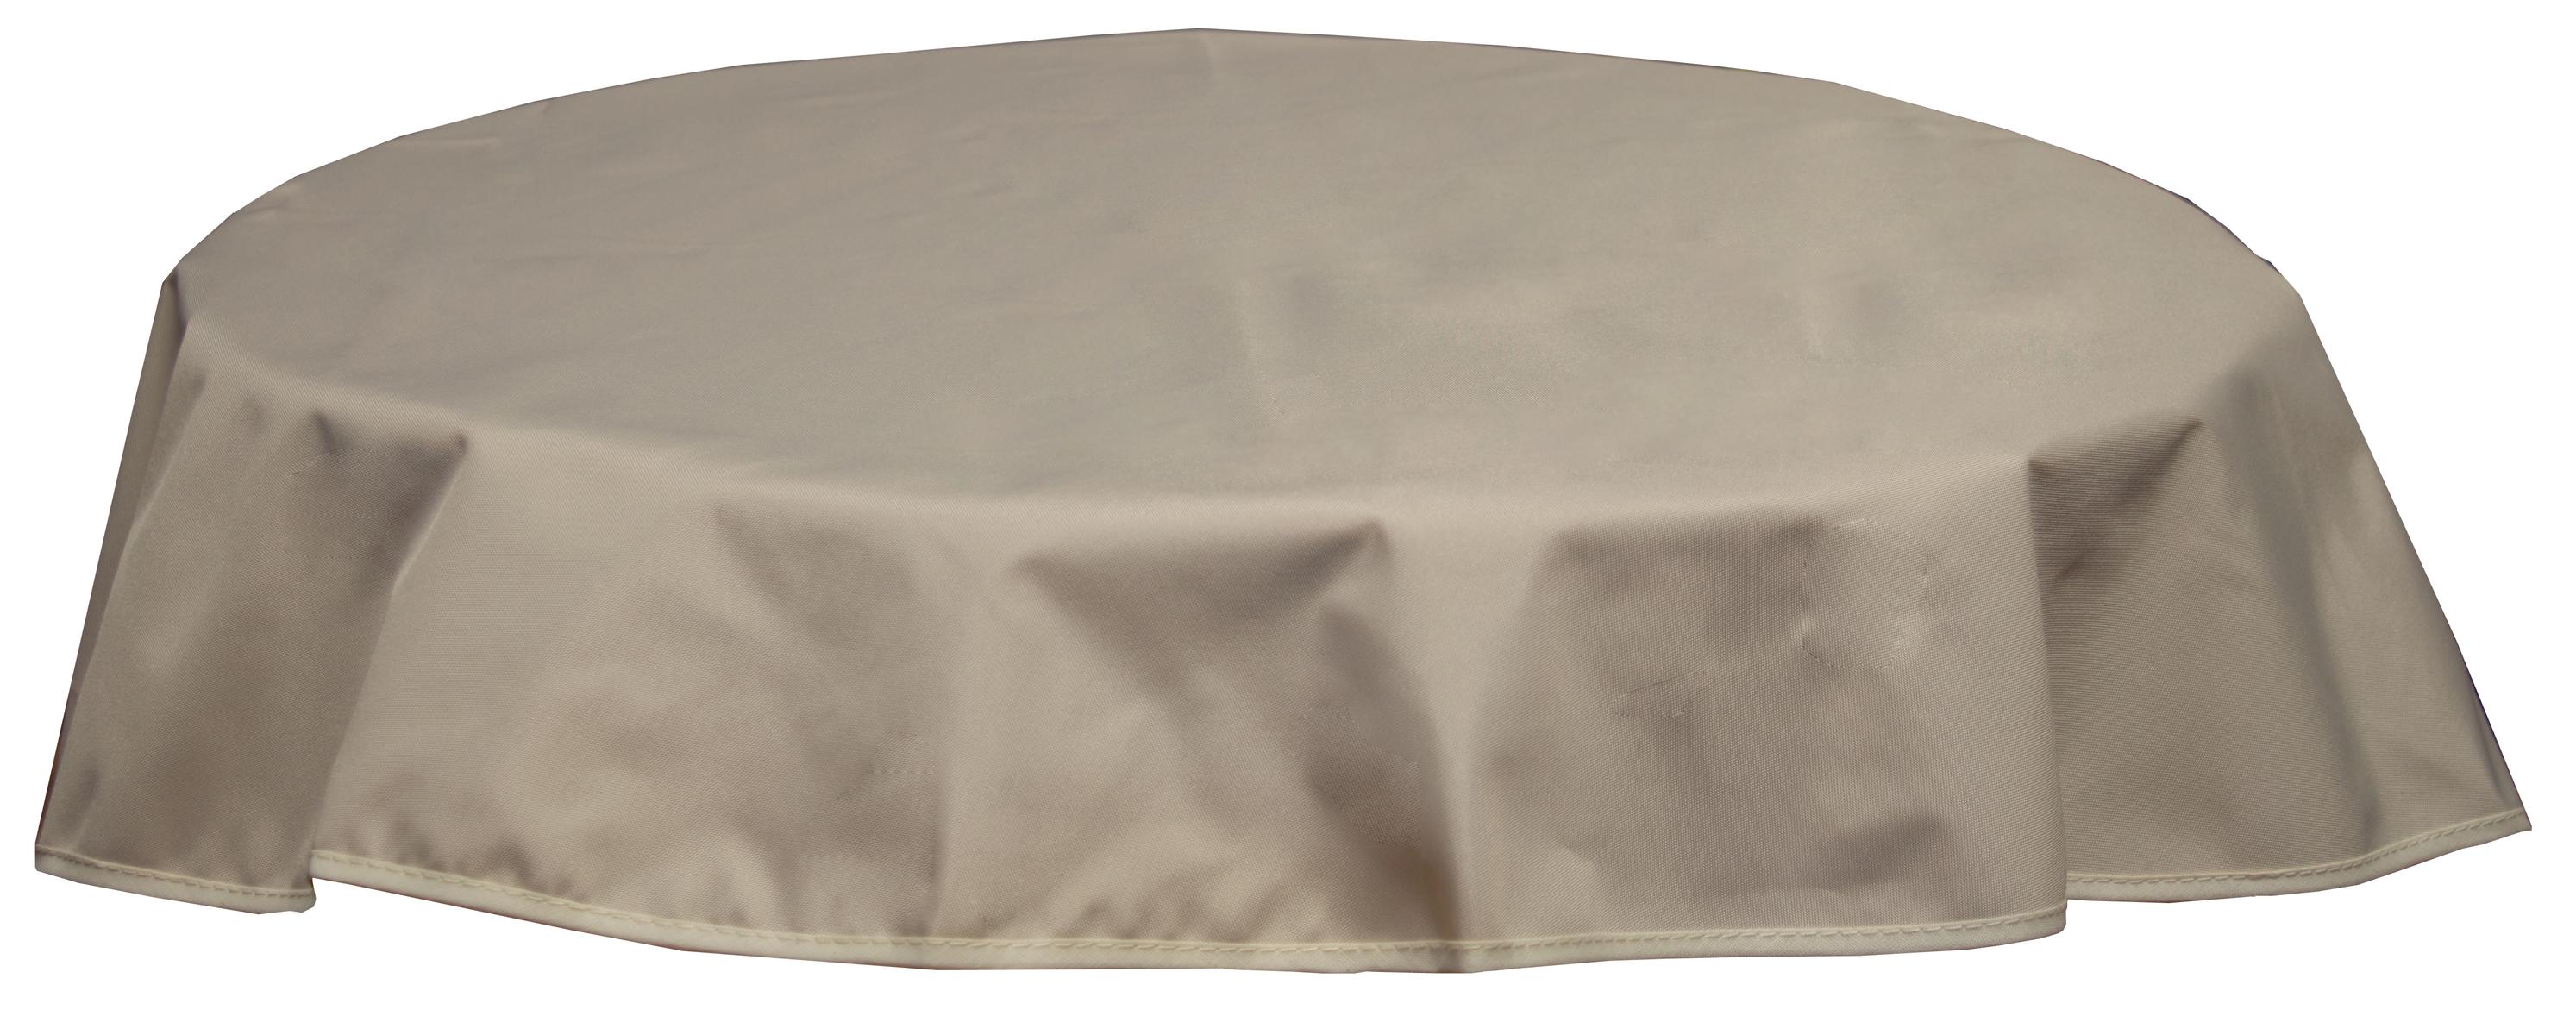 Runde Tischdecke 160cm wasserabweisend 100% Polyester in beige